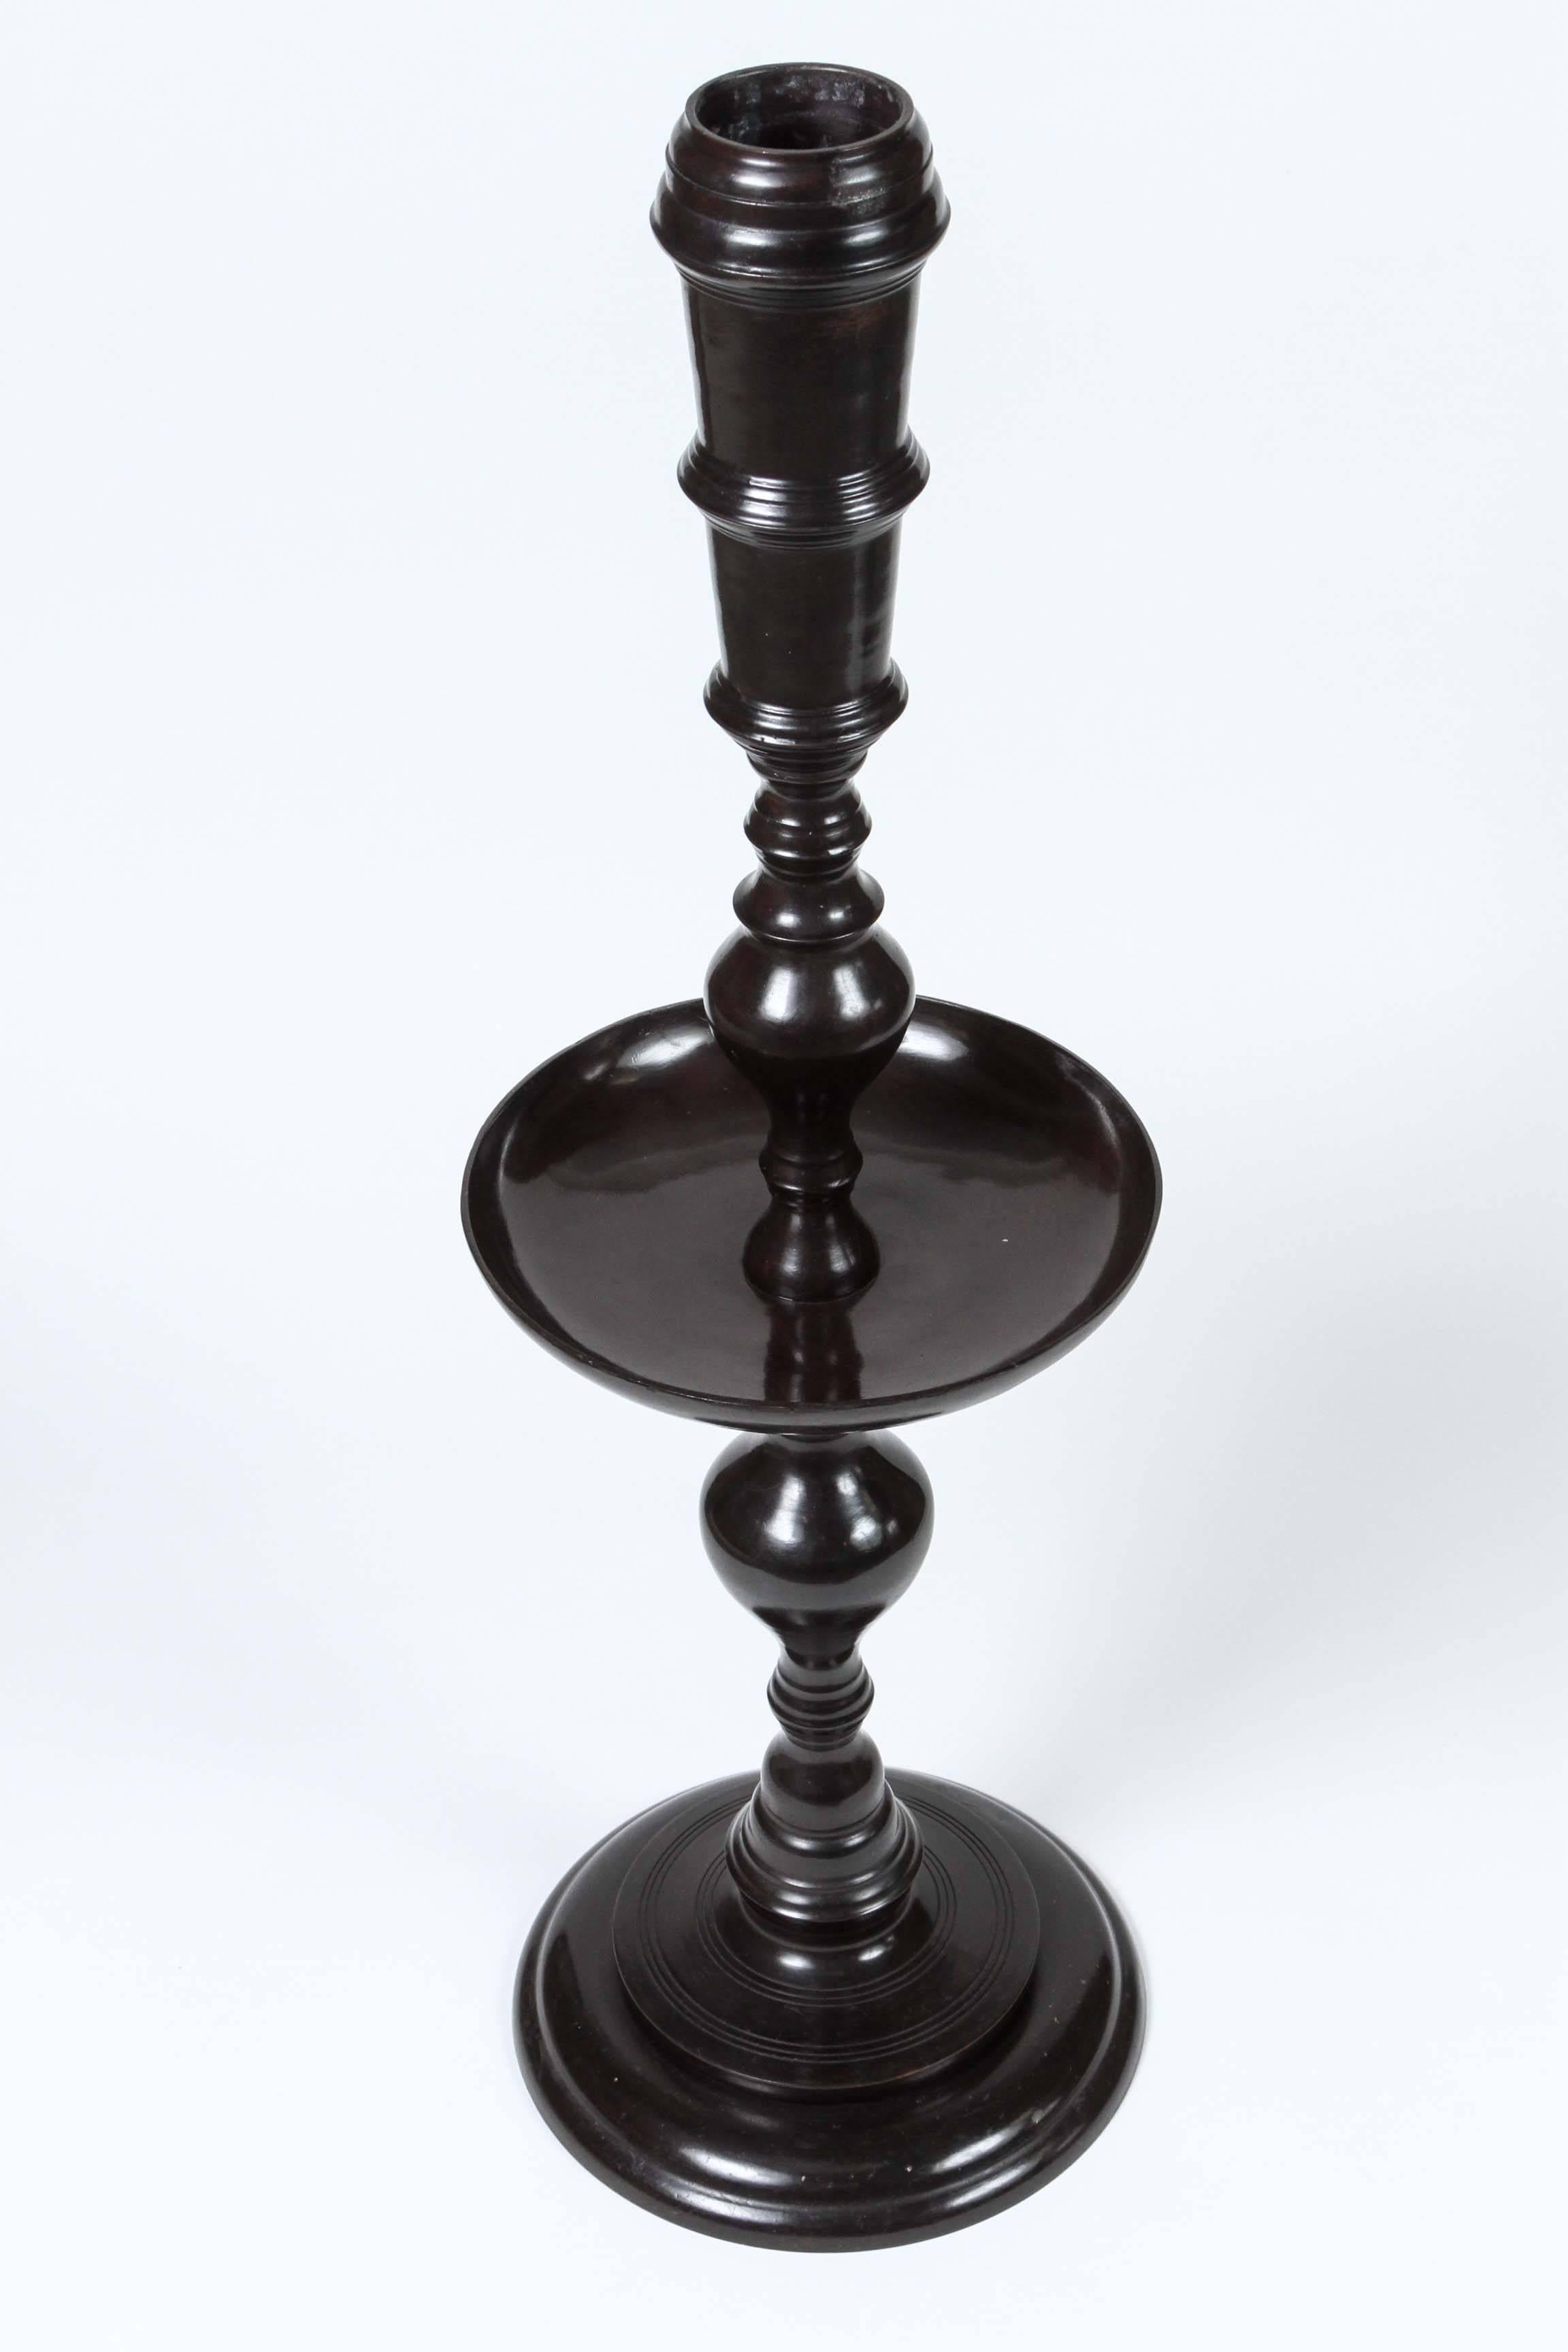 Paire de grands chandeliers marocains vintage en métal noir par Maitland-Smith.
Jolis bâtons de bougie en métal noir poli de style mauresque marocain.
Superbes chandeliers élégants de style moderne du milieu du siècle.
Fabriqué à la main en